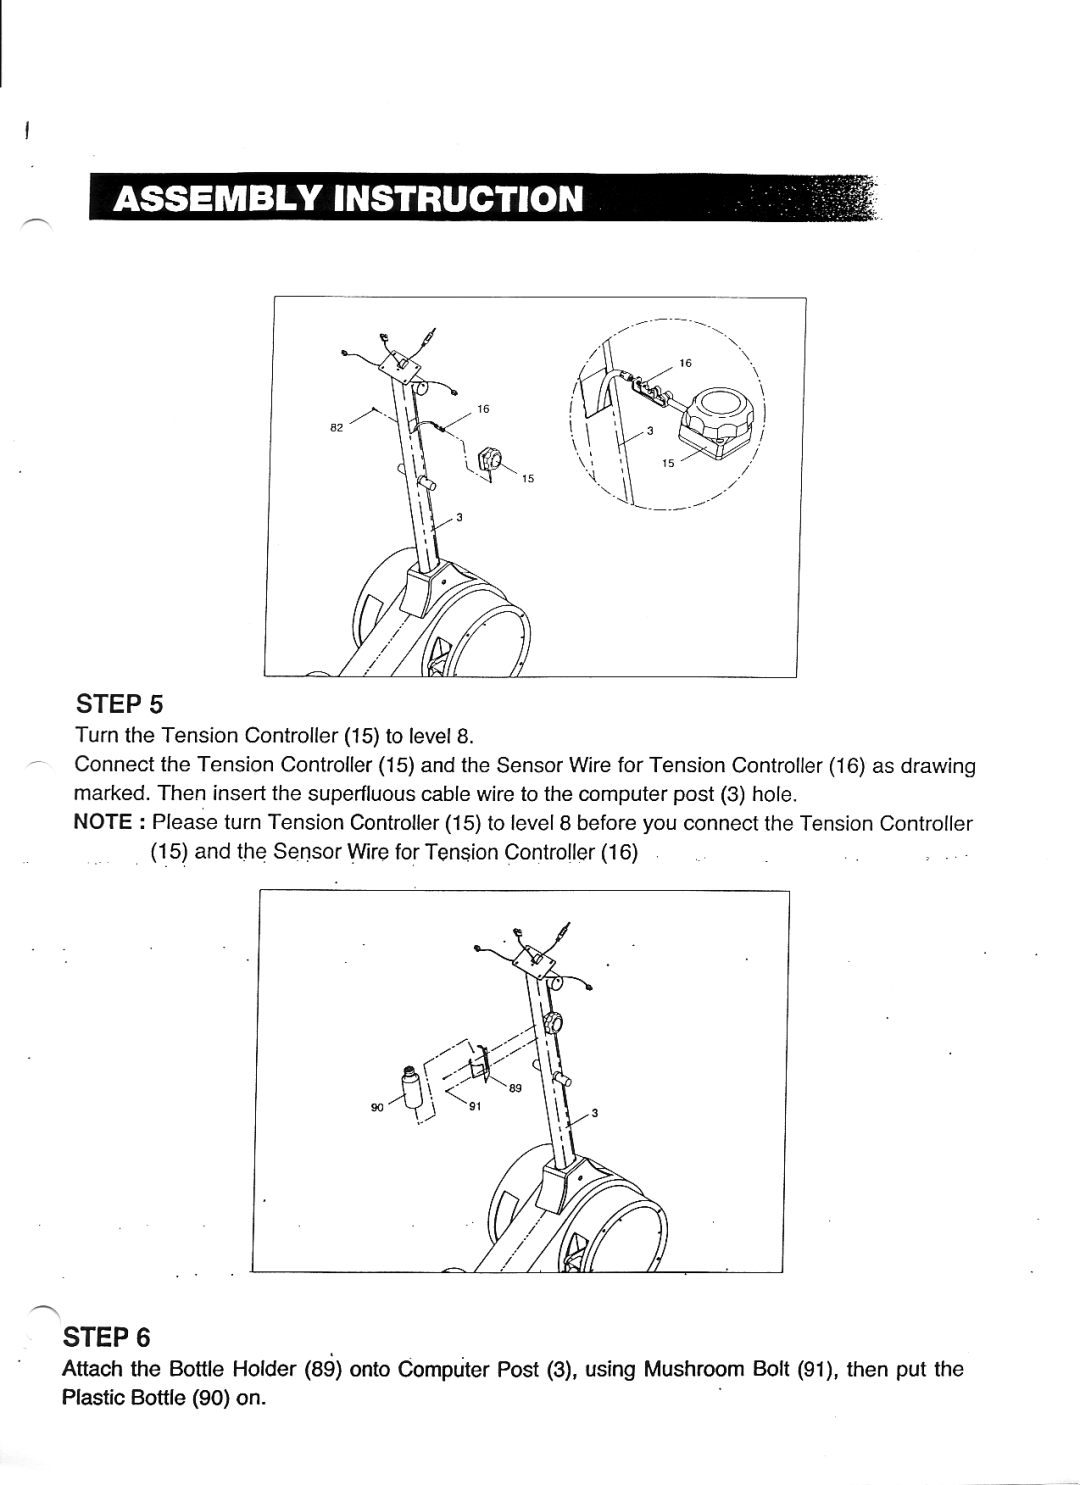 Keys Fitness ET4000 manual 